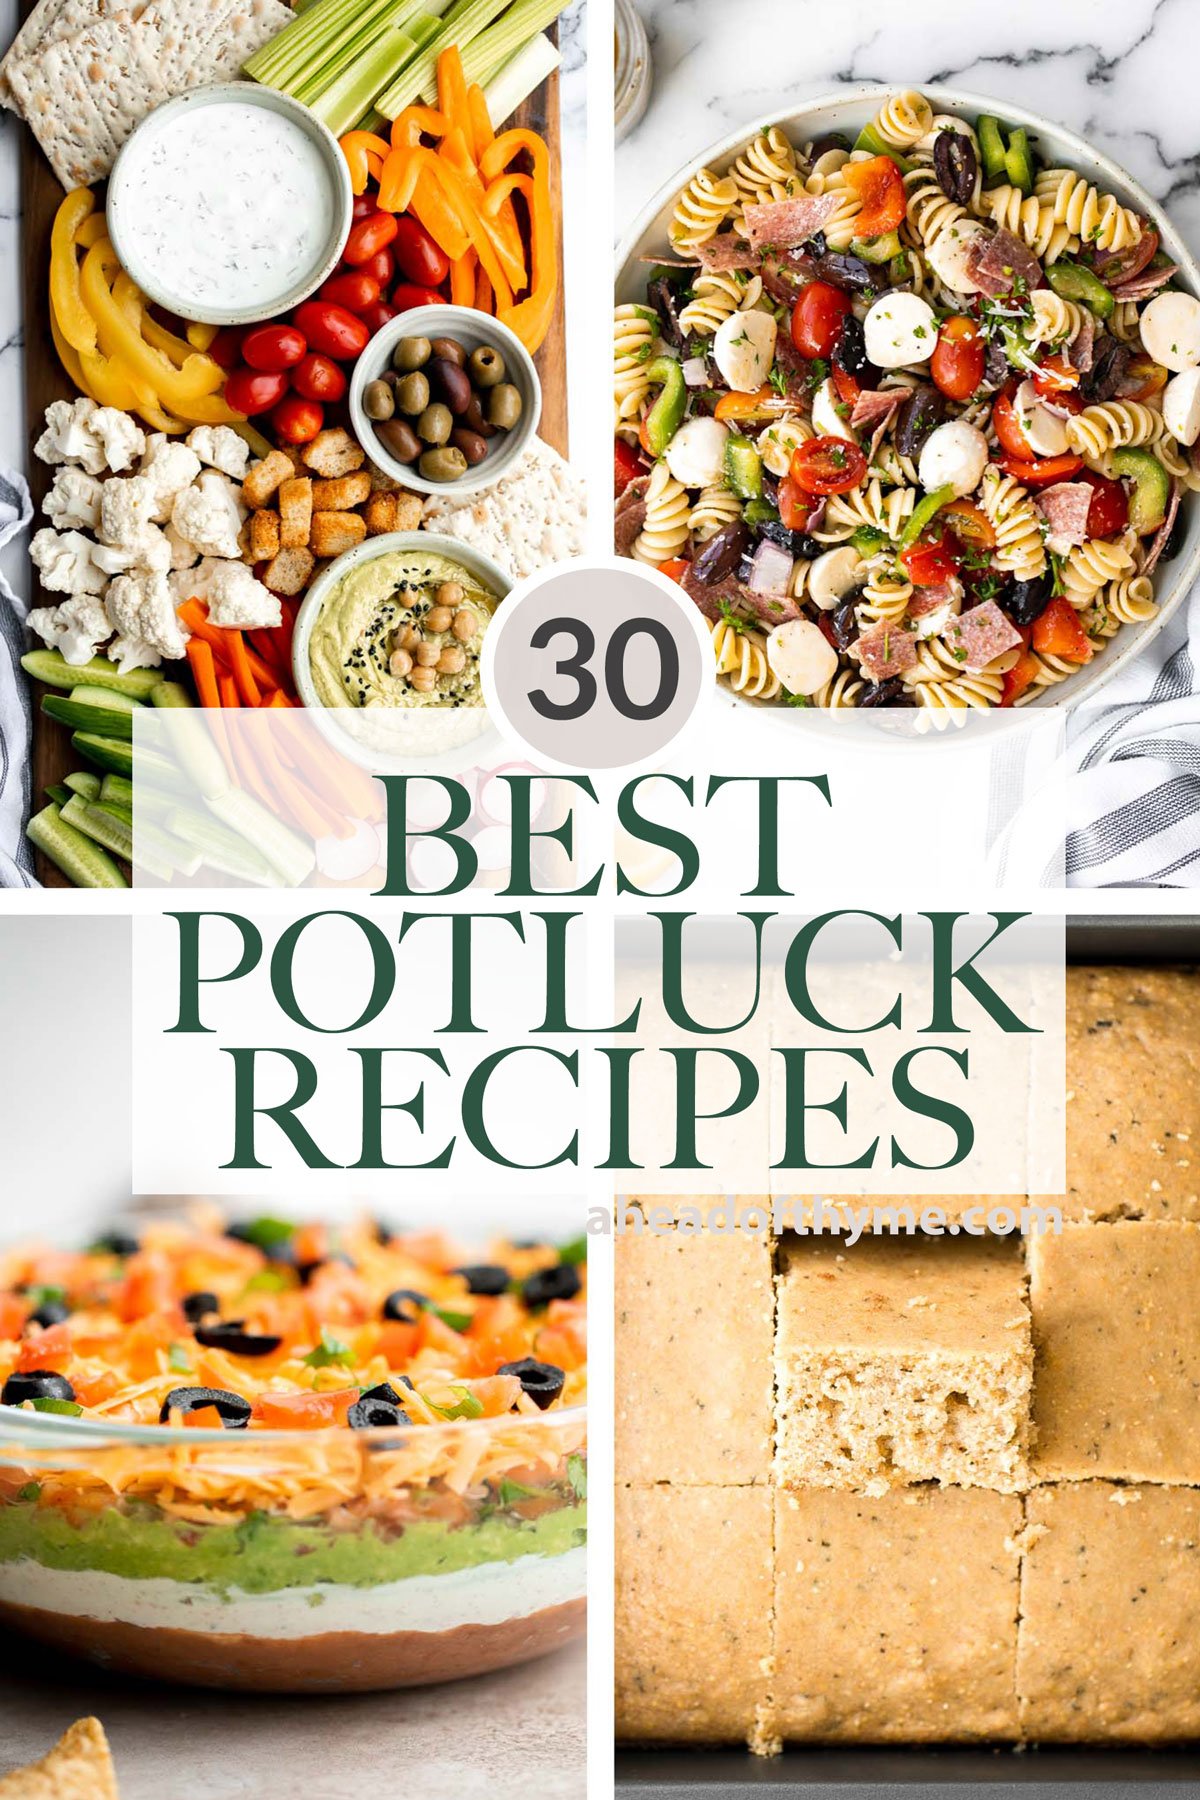 30 Best Potluck Recipes